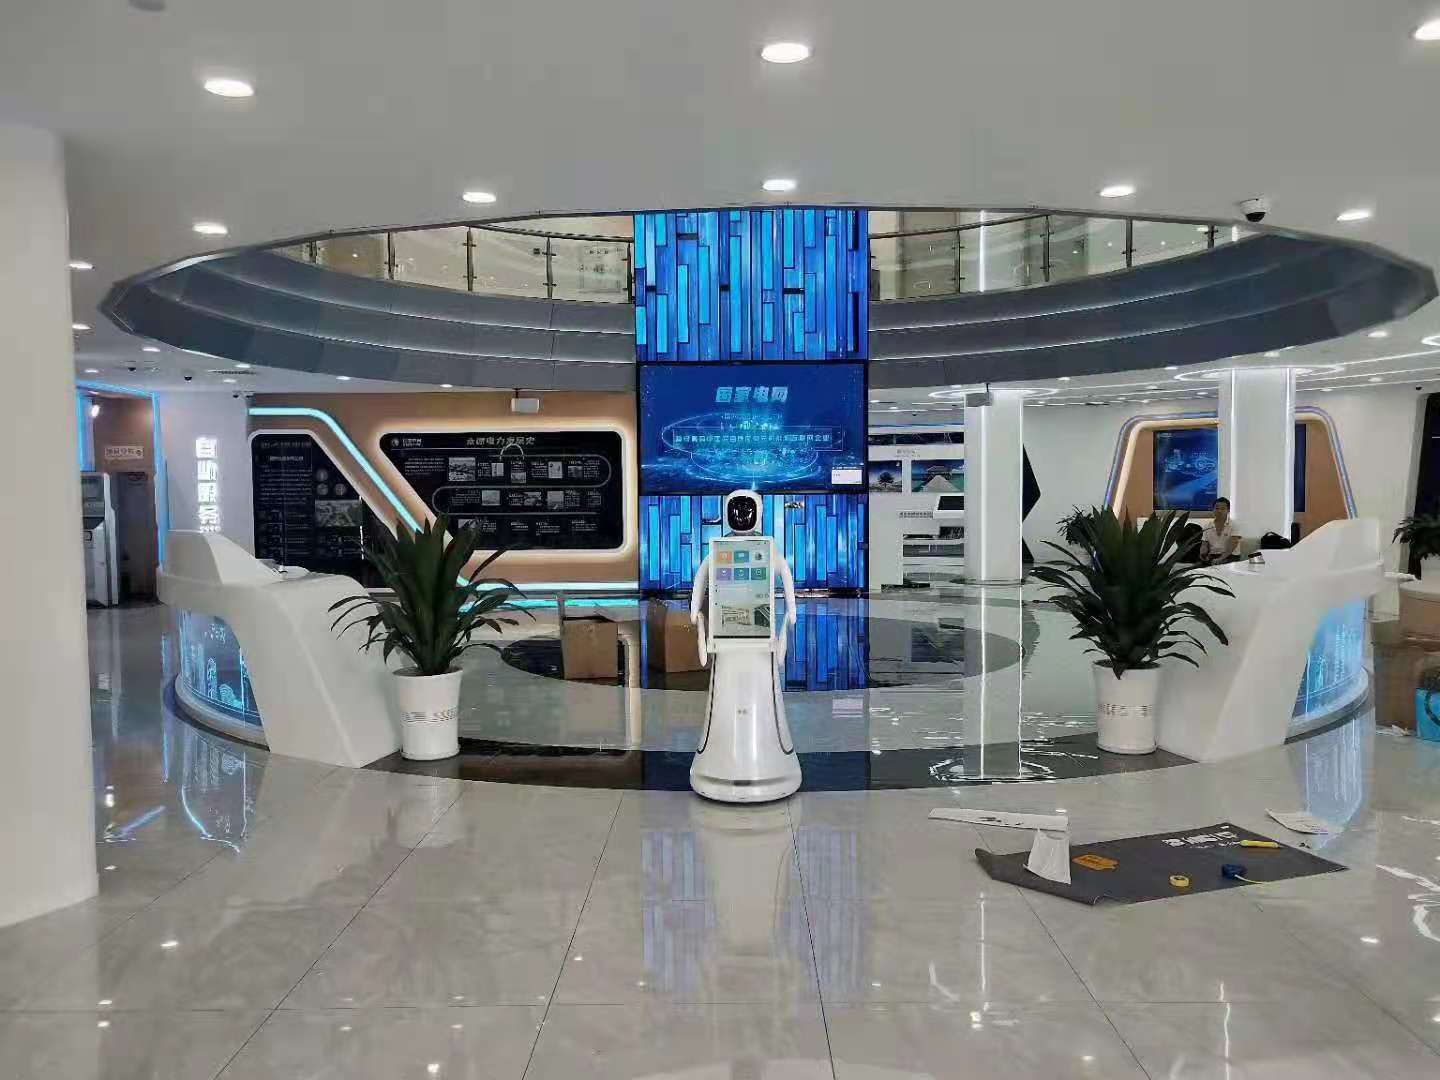 扬州展馆讲解机器人接待服务